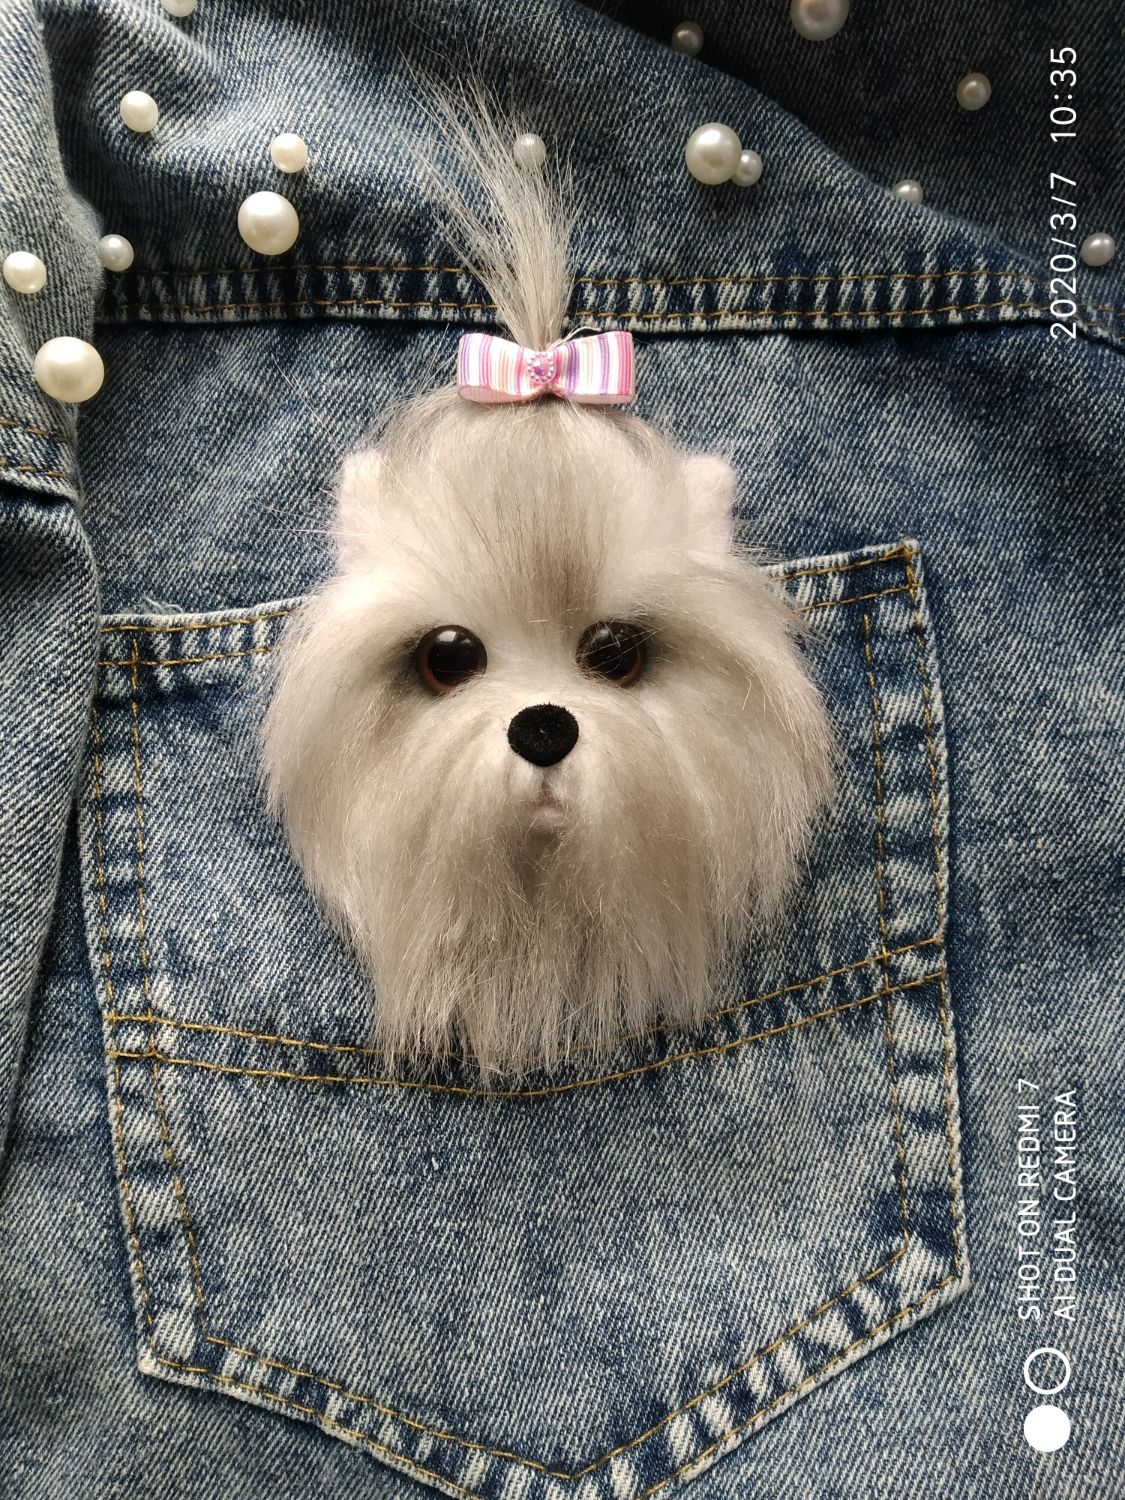 Собака в кармане